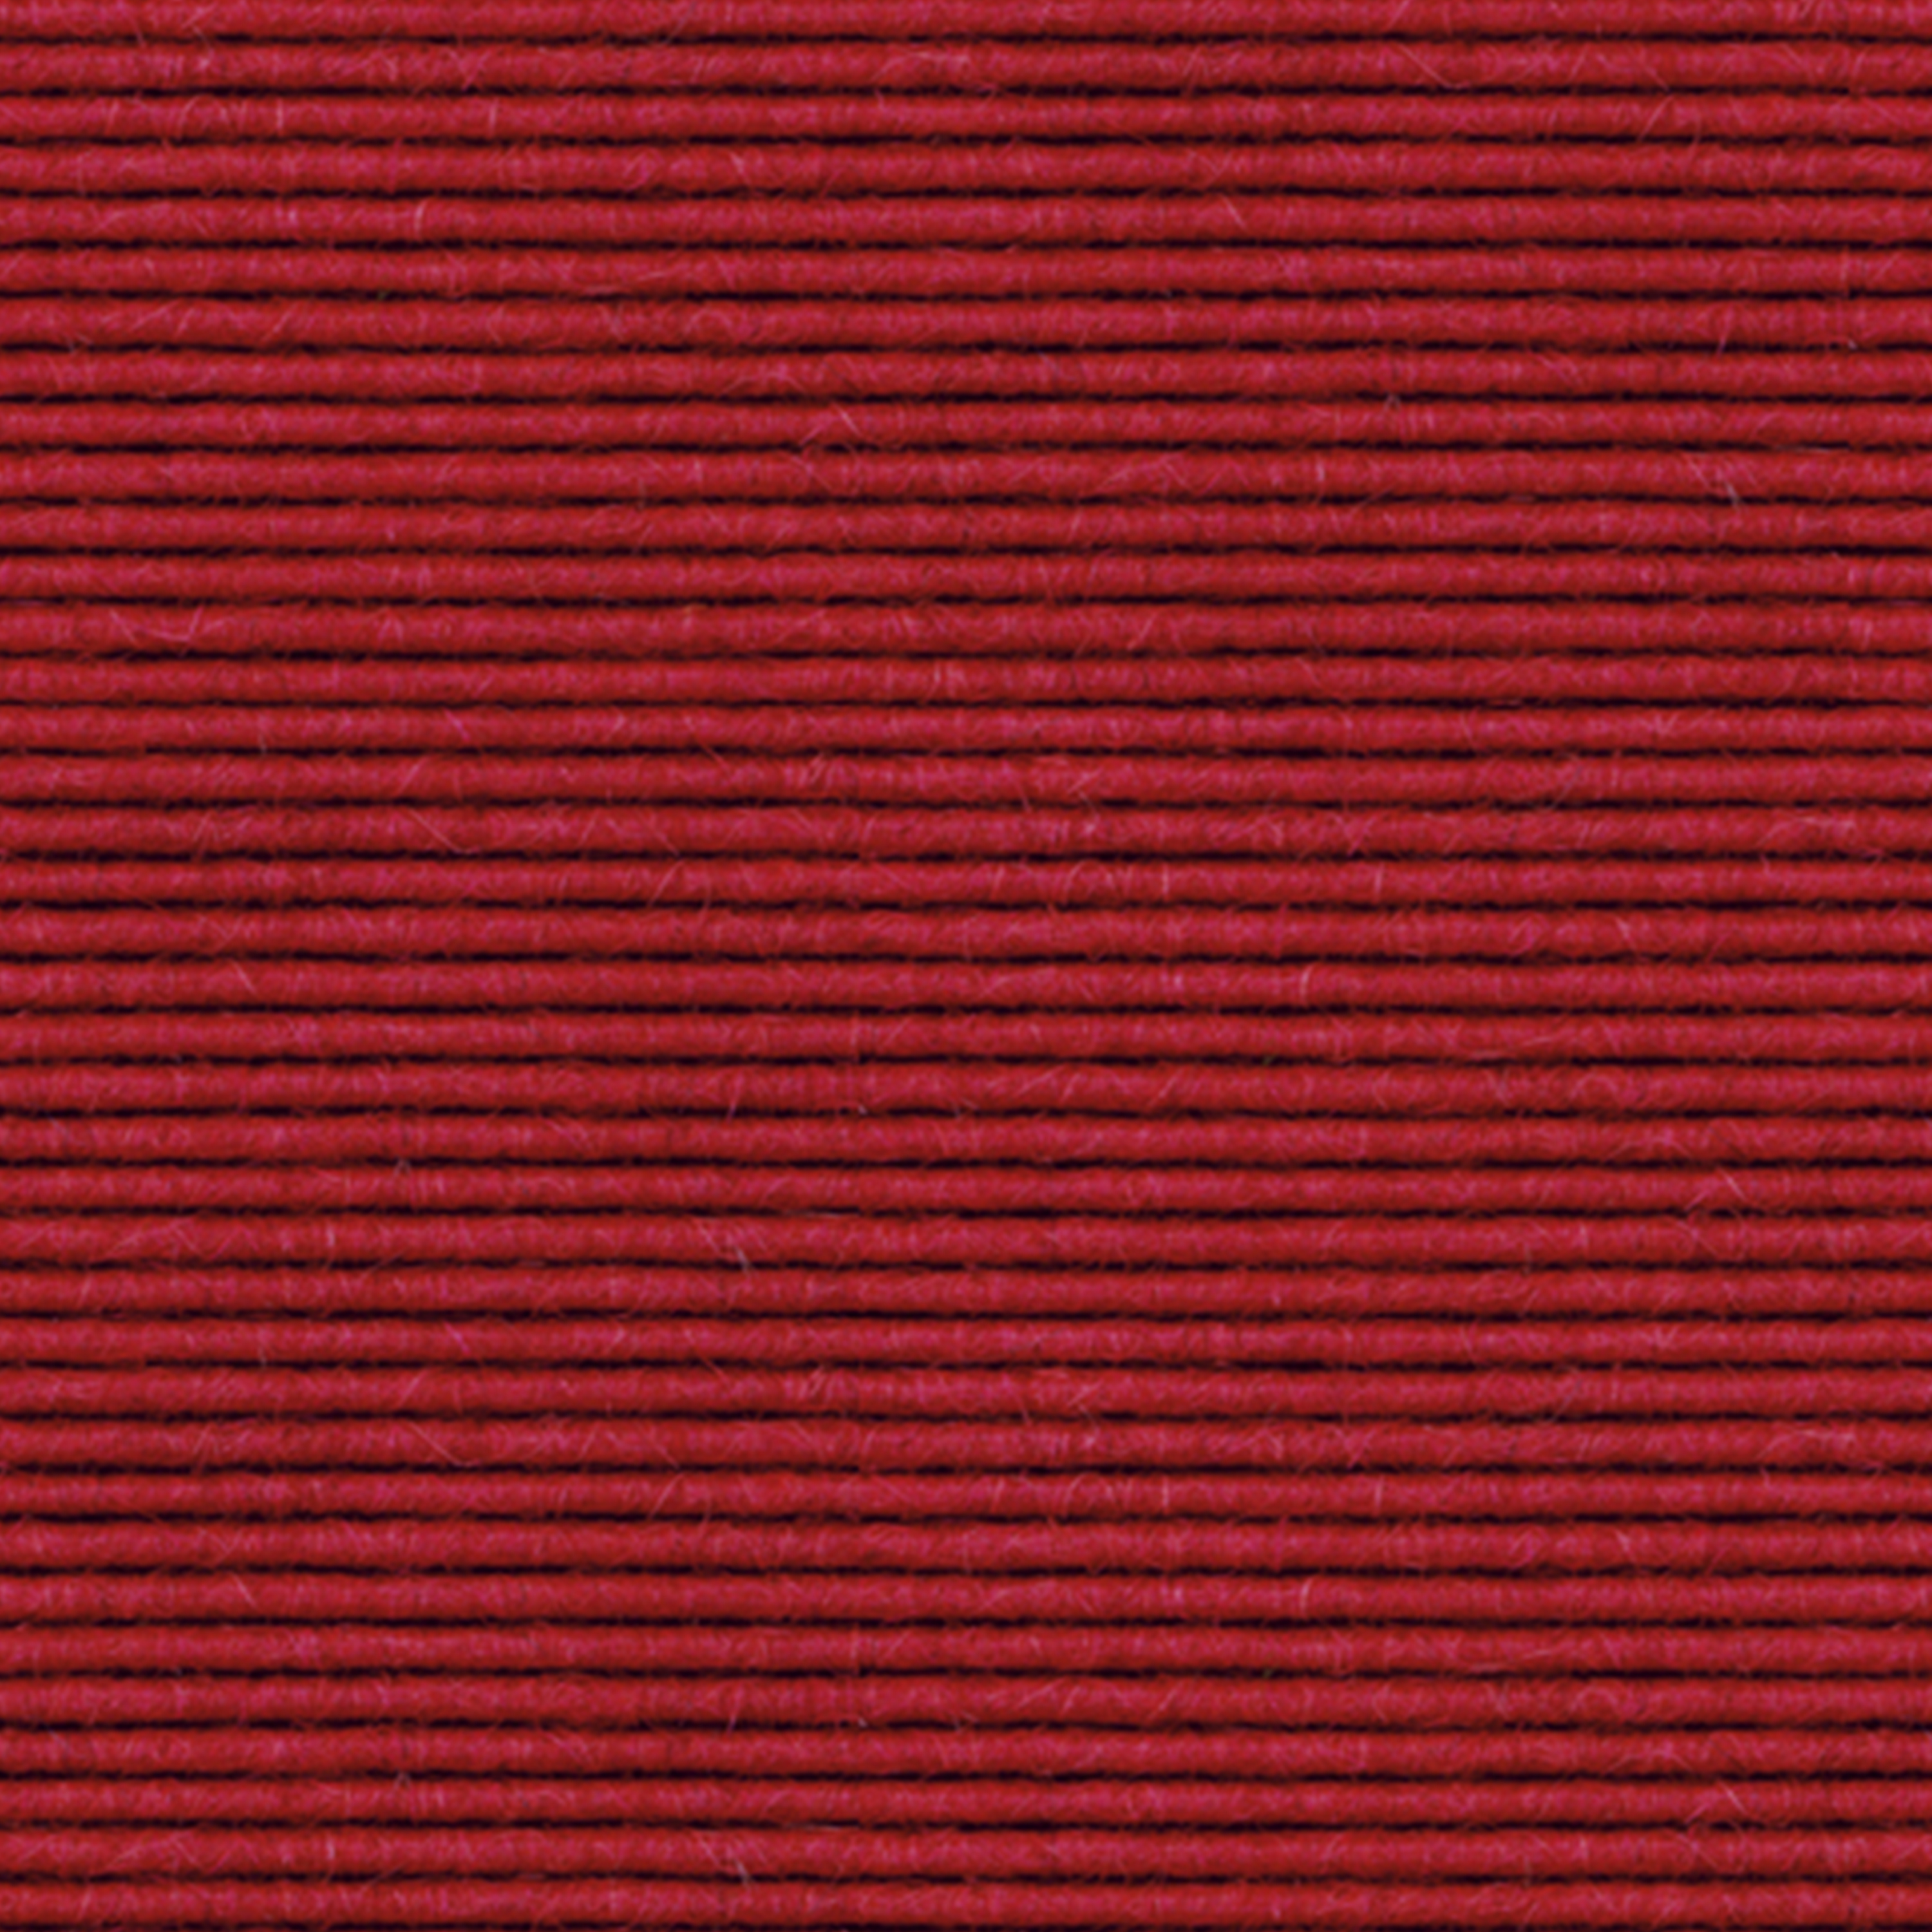 tretford-Teppich 'Erdbeere (570)', 2 x 2 m, ungekettelt